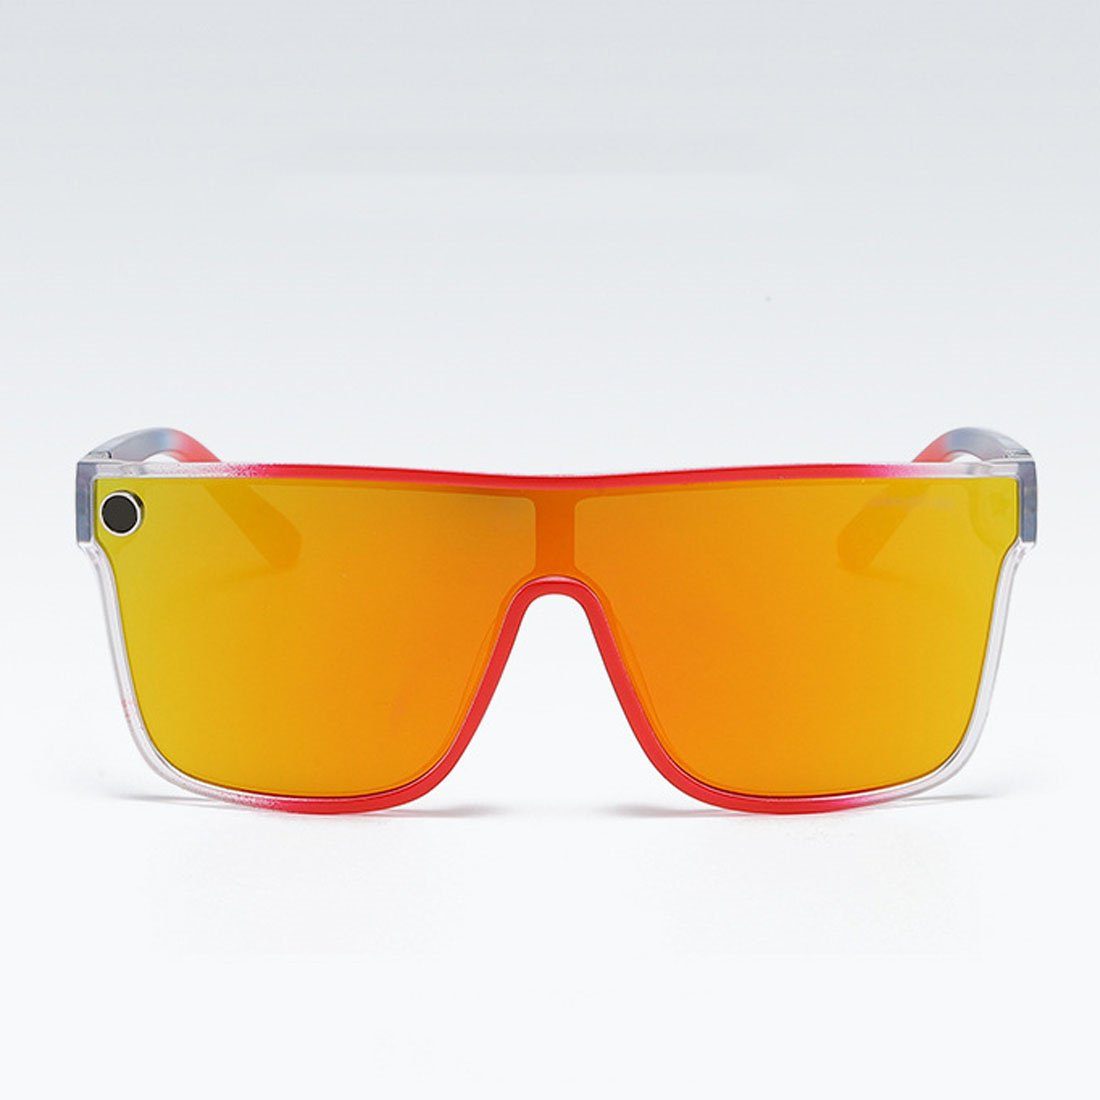 Frauen, DÖRÖY Sonnenbrille Radsport-Sonnenbrillen Männer für und Outdoor-Sonnenbrillen